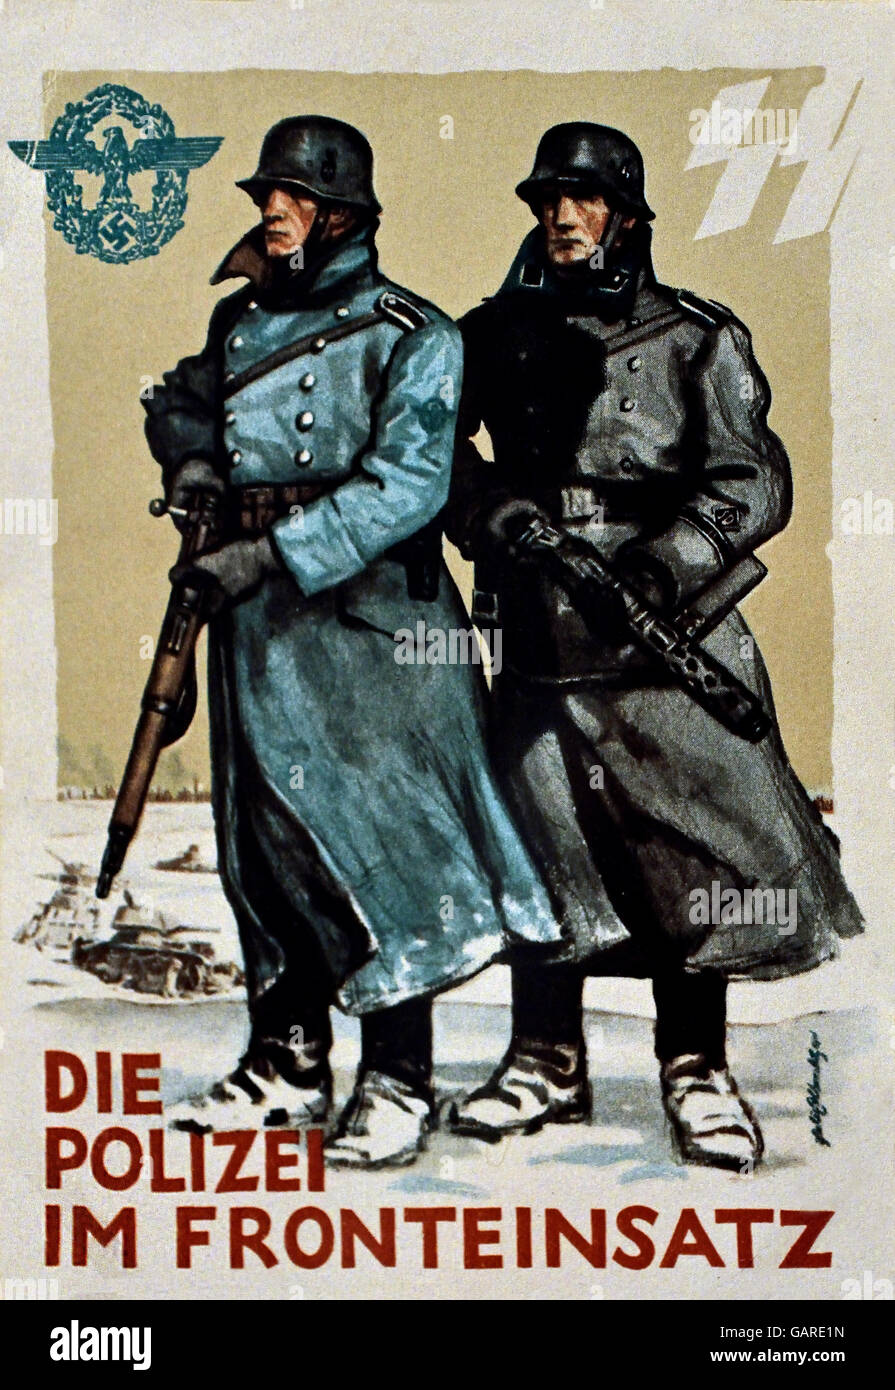 Die Polizei Fronteinsatz im - Policía de la unidad frontal Berlin Alemania nazi ( postal para el día de la policía alemana de 1942 ) Foto de stock